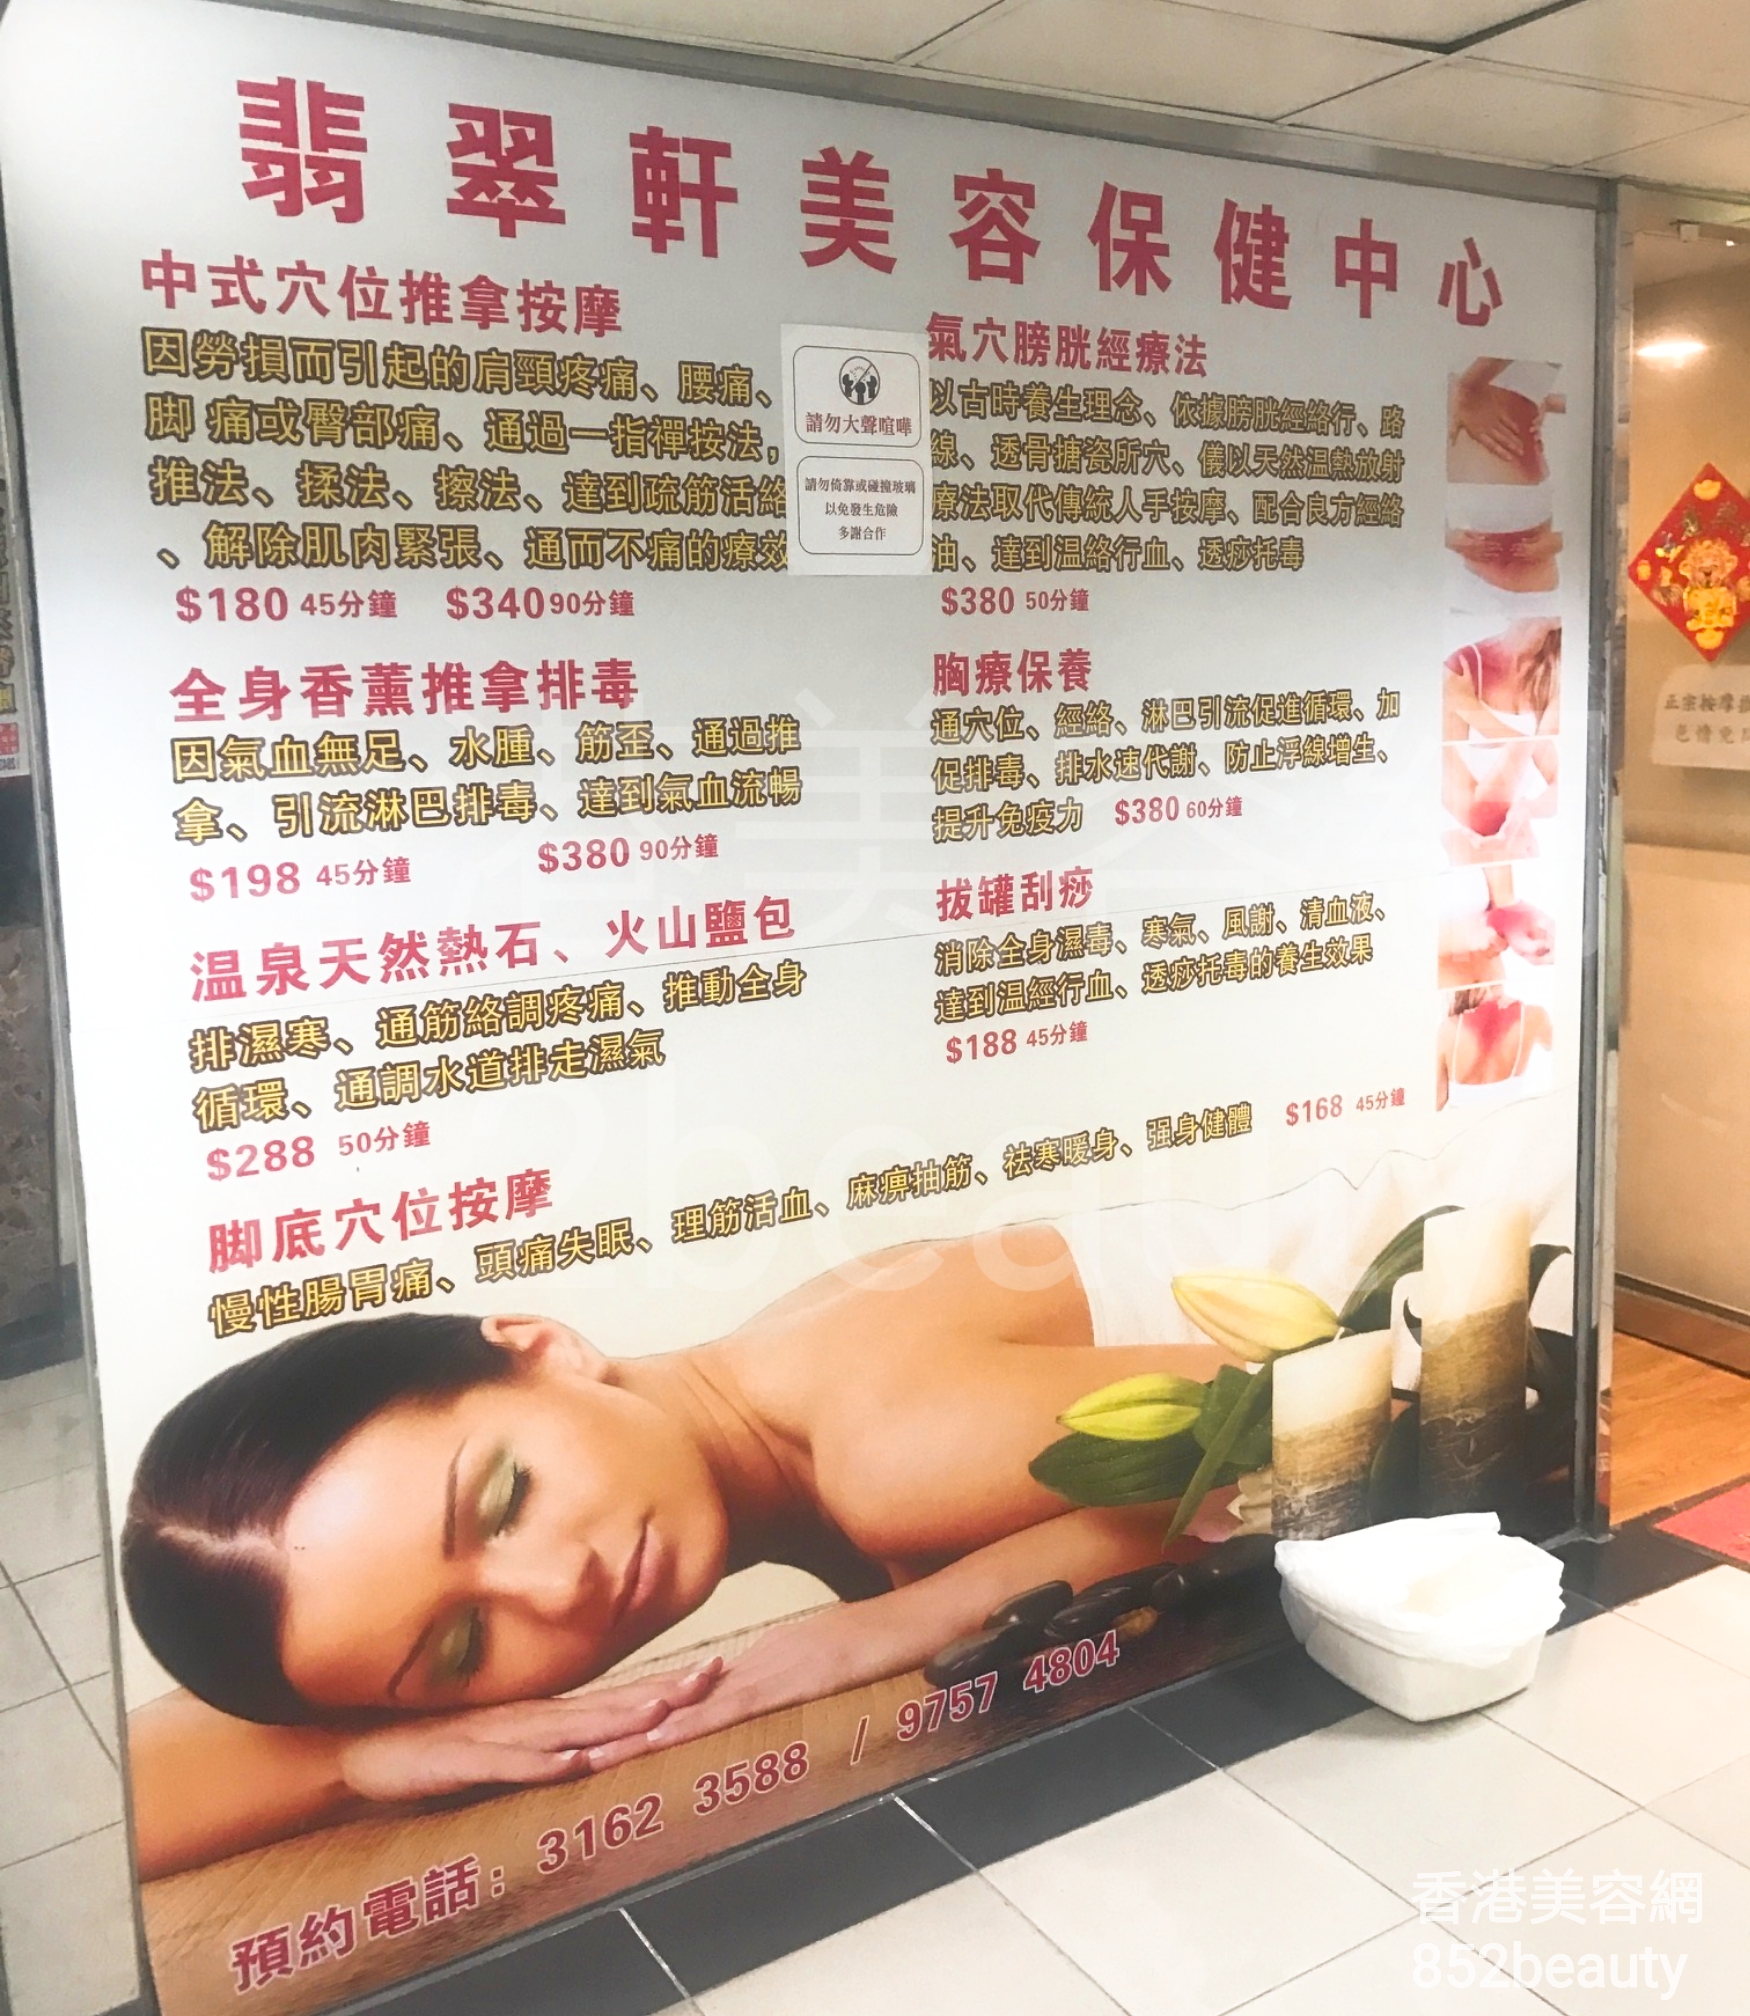 香港美容網 Hong Kong Beauty Salon 美容院 / 美容師: 翡翠軒美容保健中心